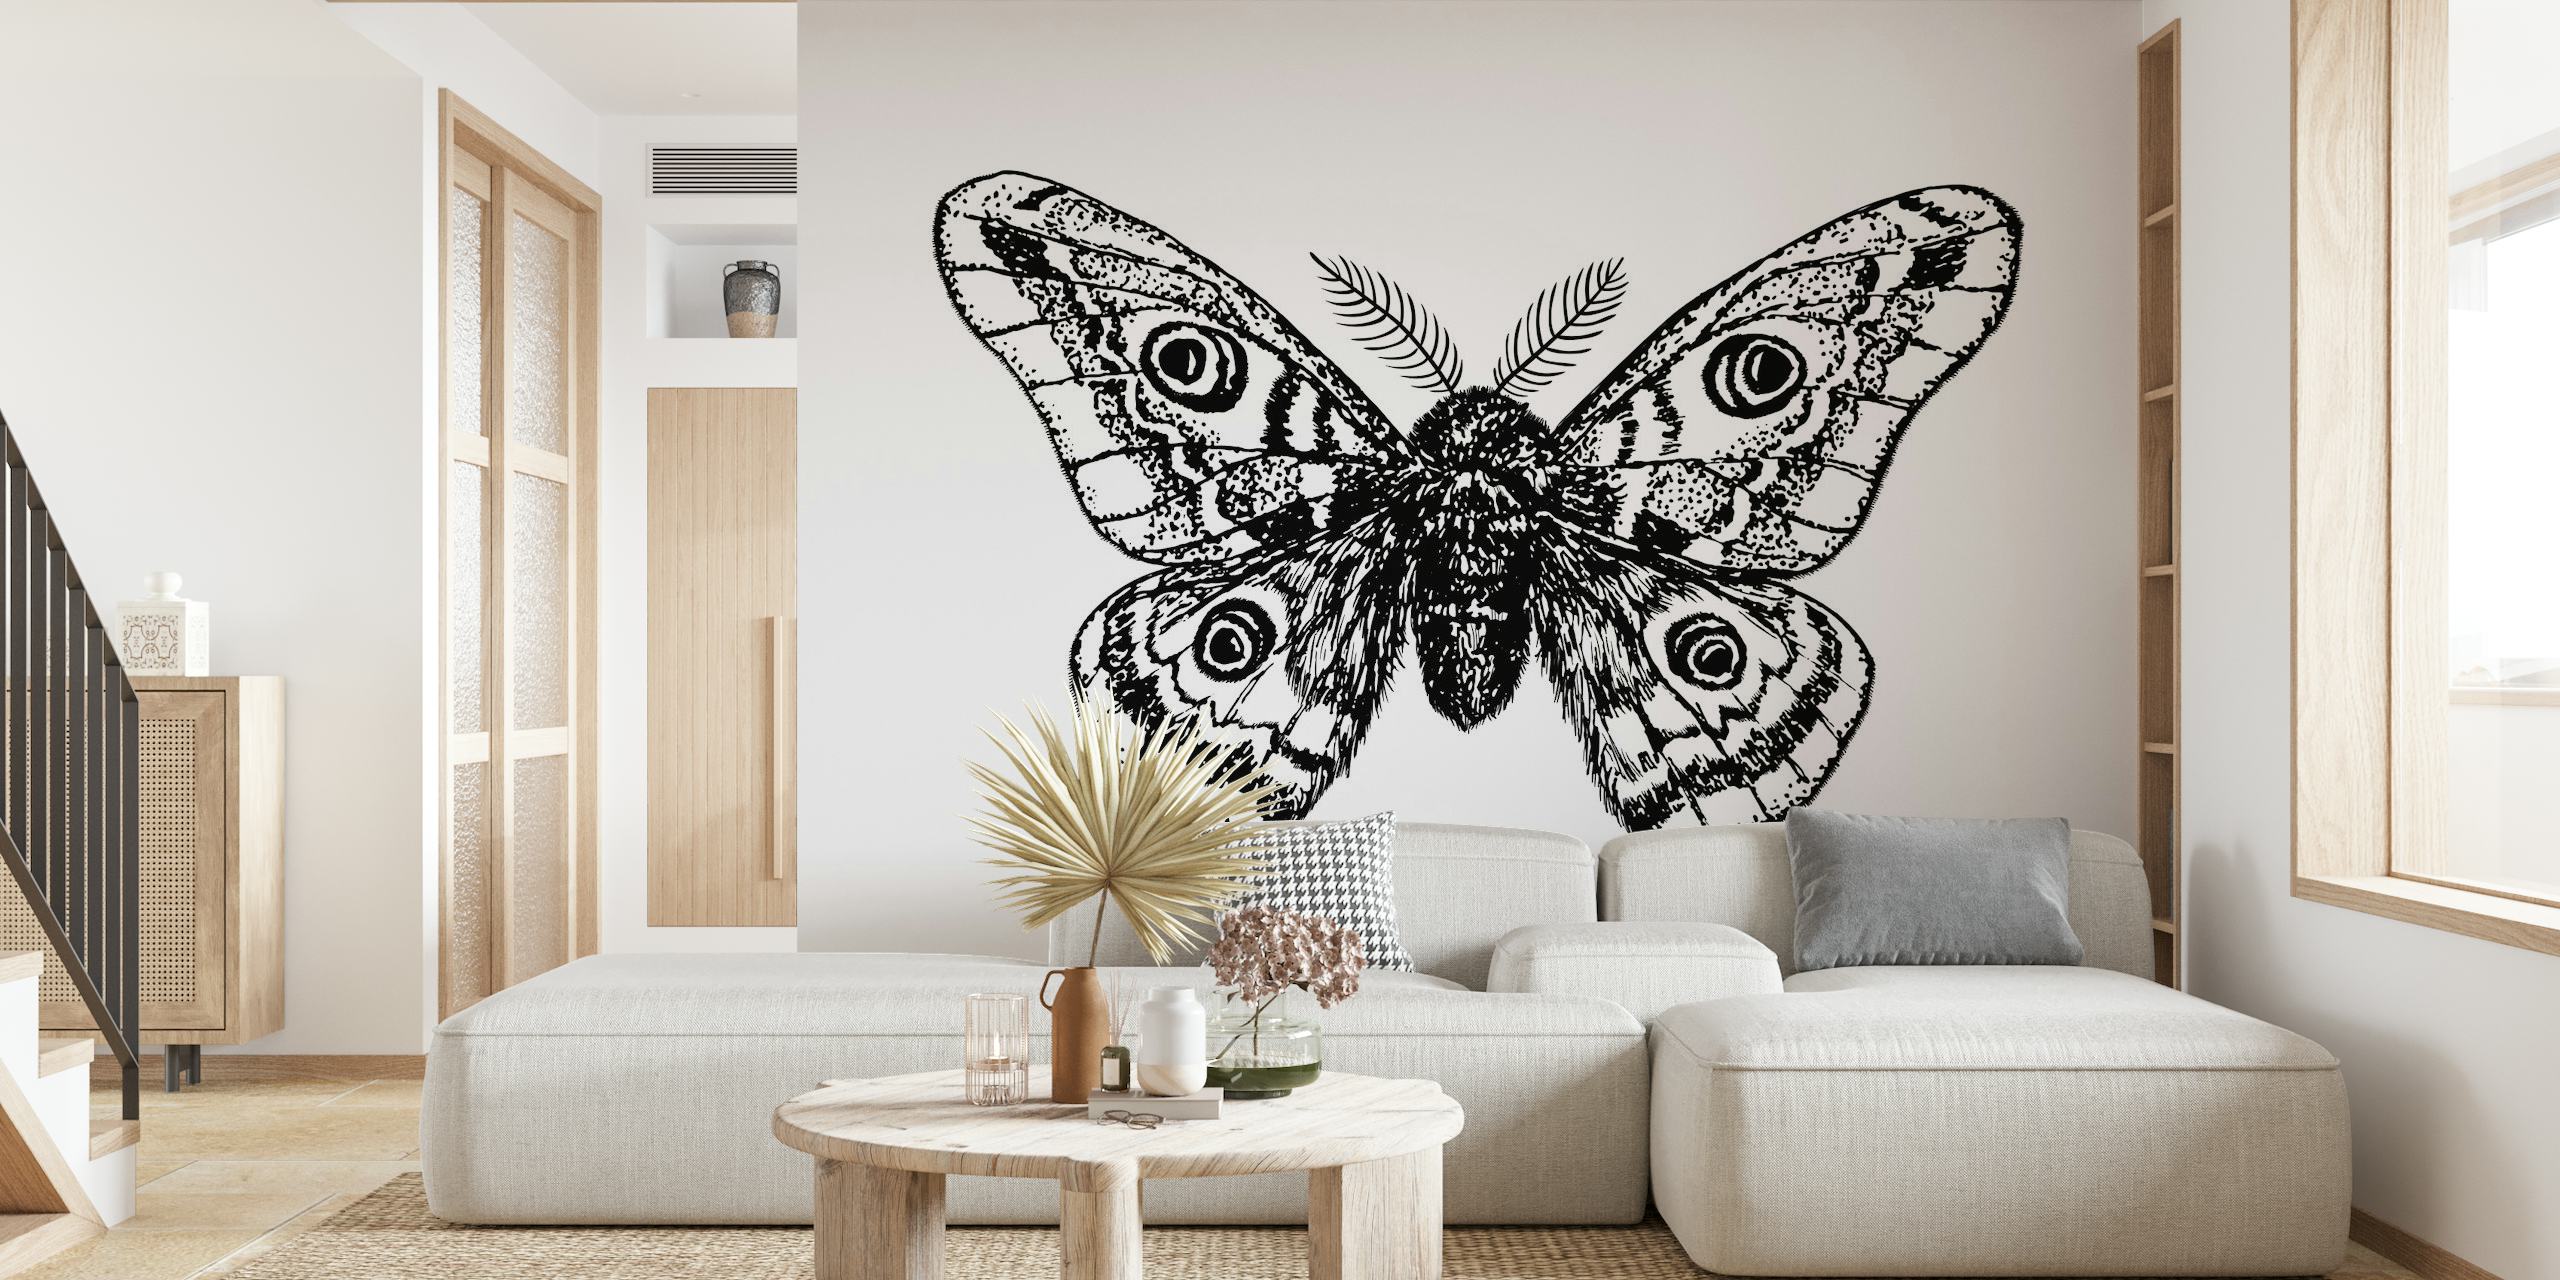 Emperor moth drawing papel pintado